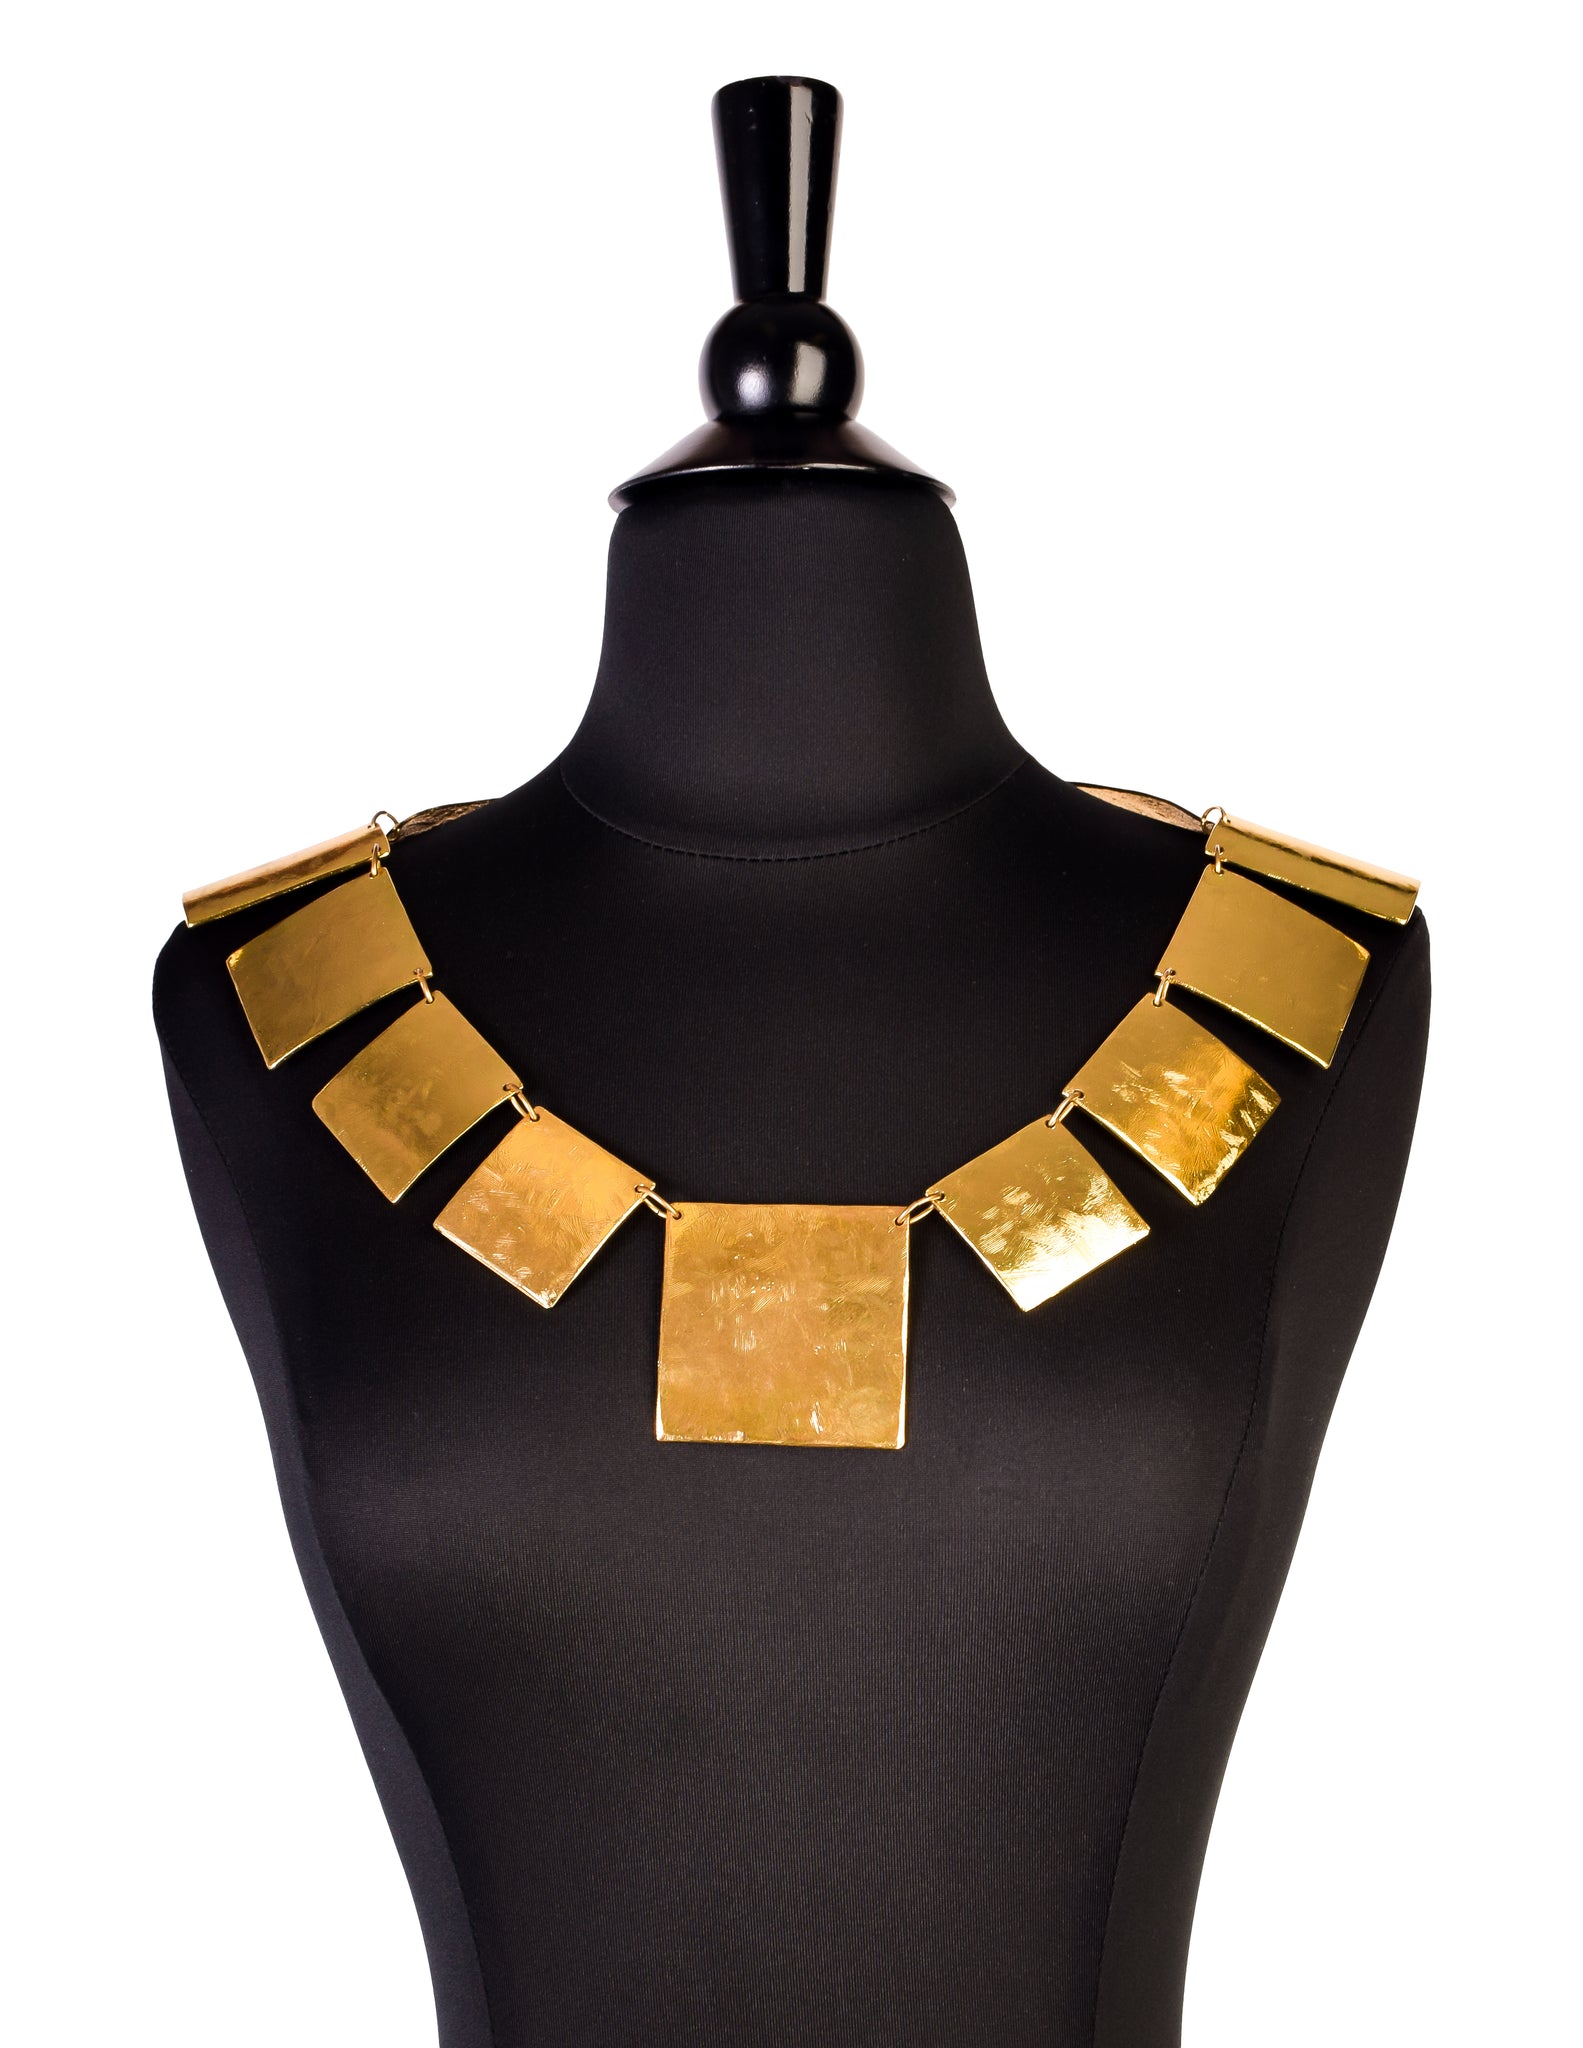 Cecile & Jeanne Vintage Massive Modernist Brushed Gold Decollete Neck Piece Necklace